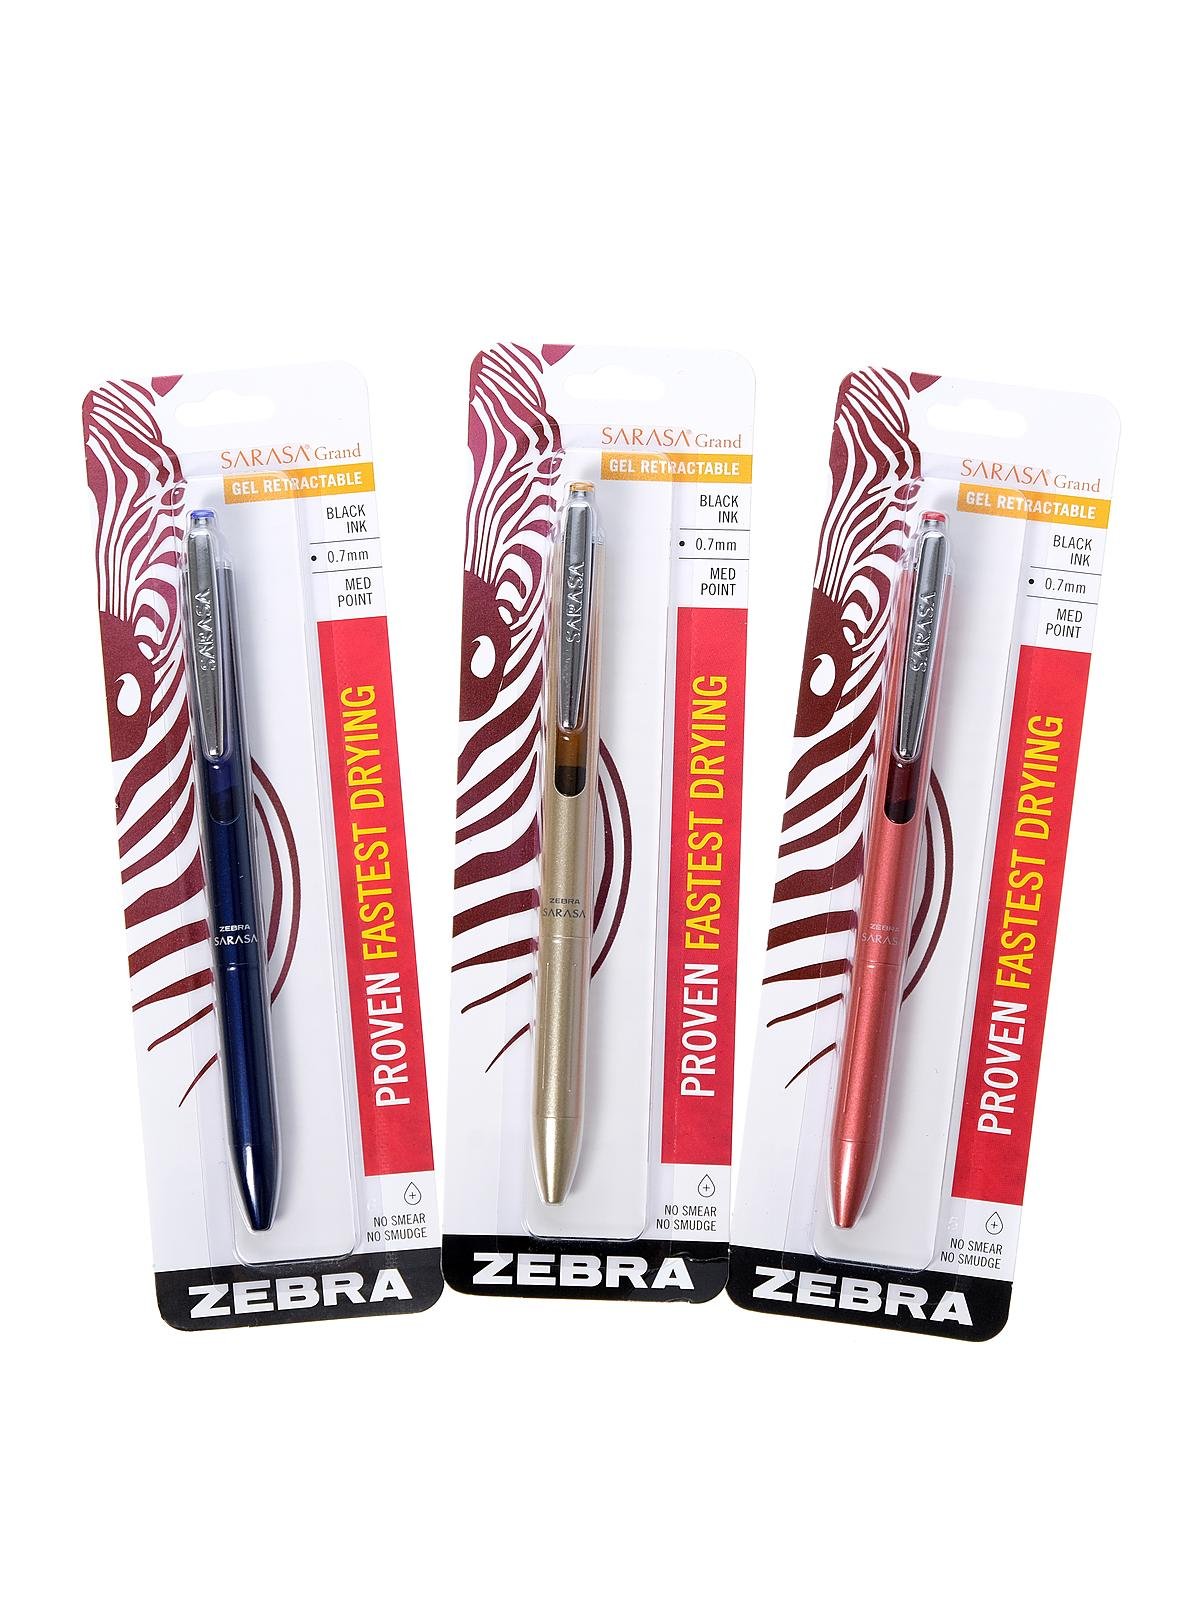 Zebra Pens - Sarasa Grand Retractable Gel Pen